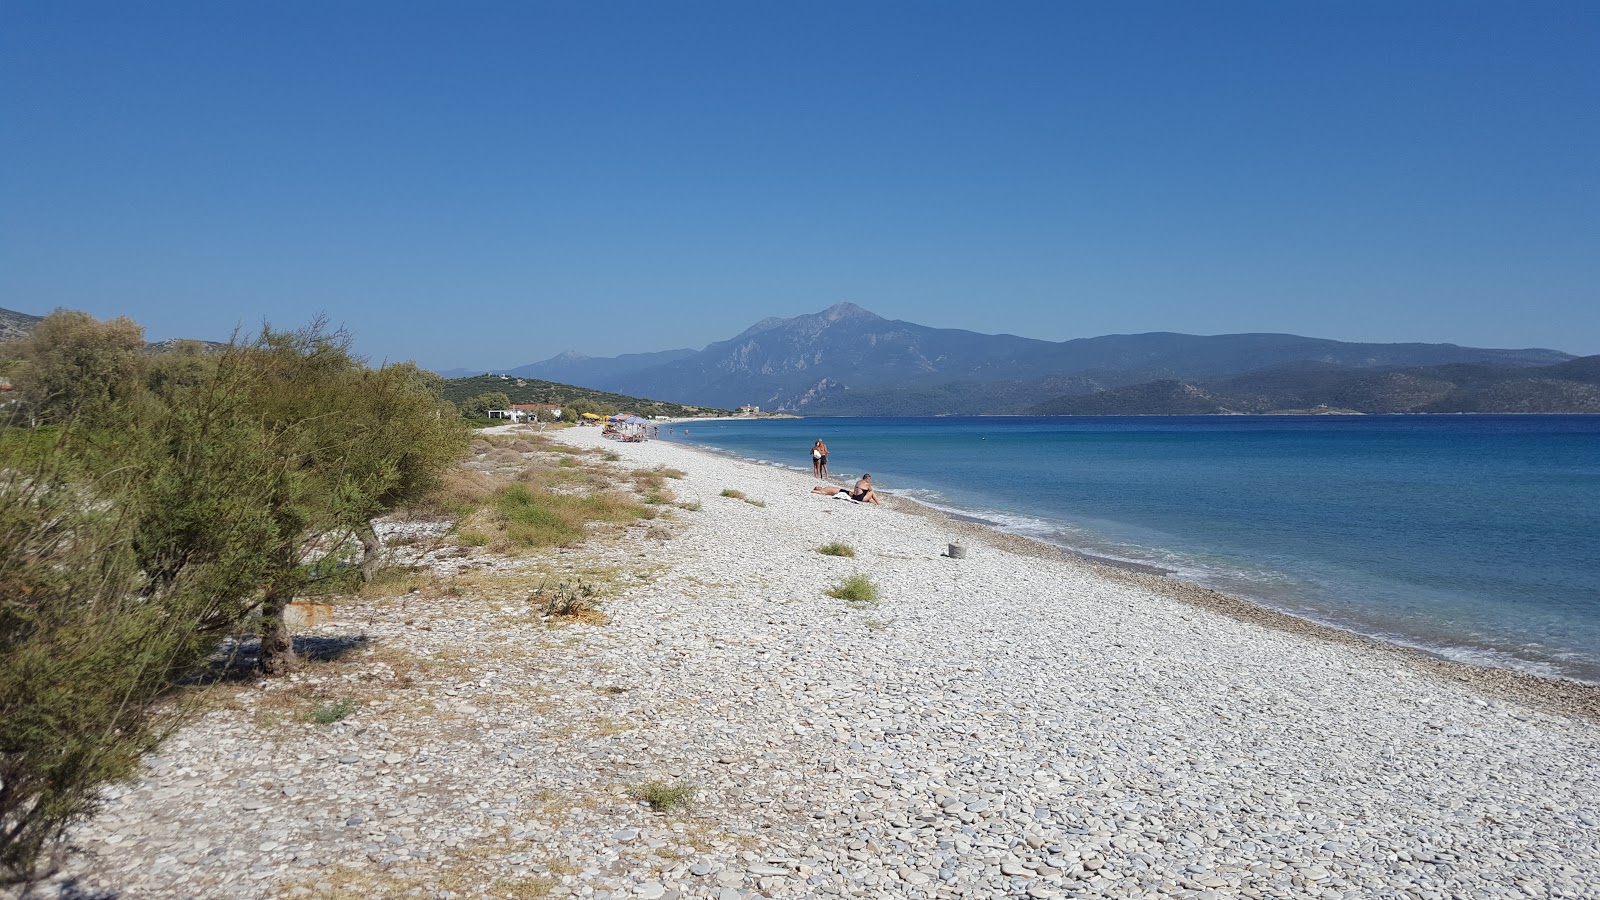 Mykali beach'in fotoğrafı ve yerleşim